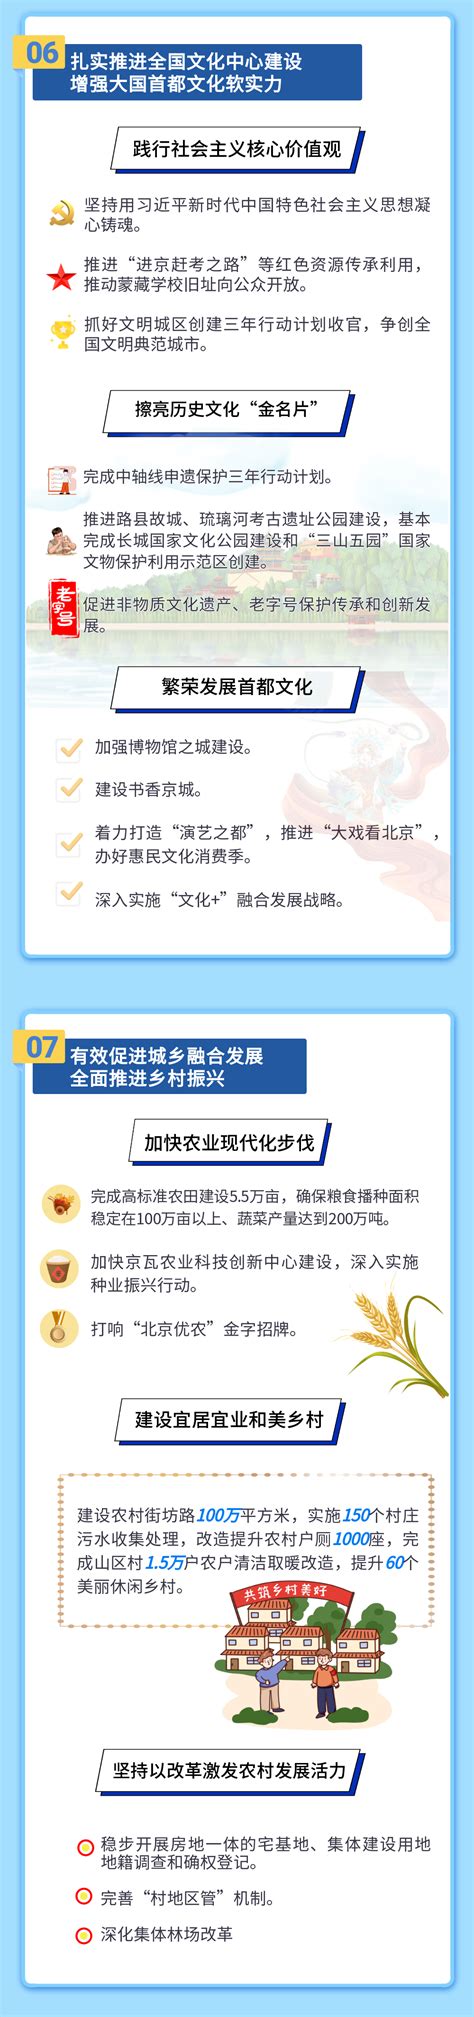 一图读懂丨2022年广东省政府工作报告